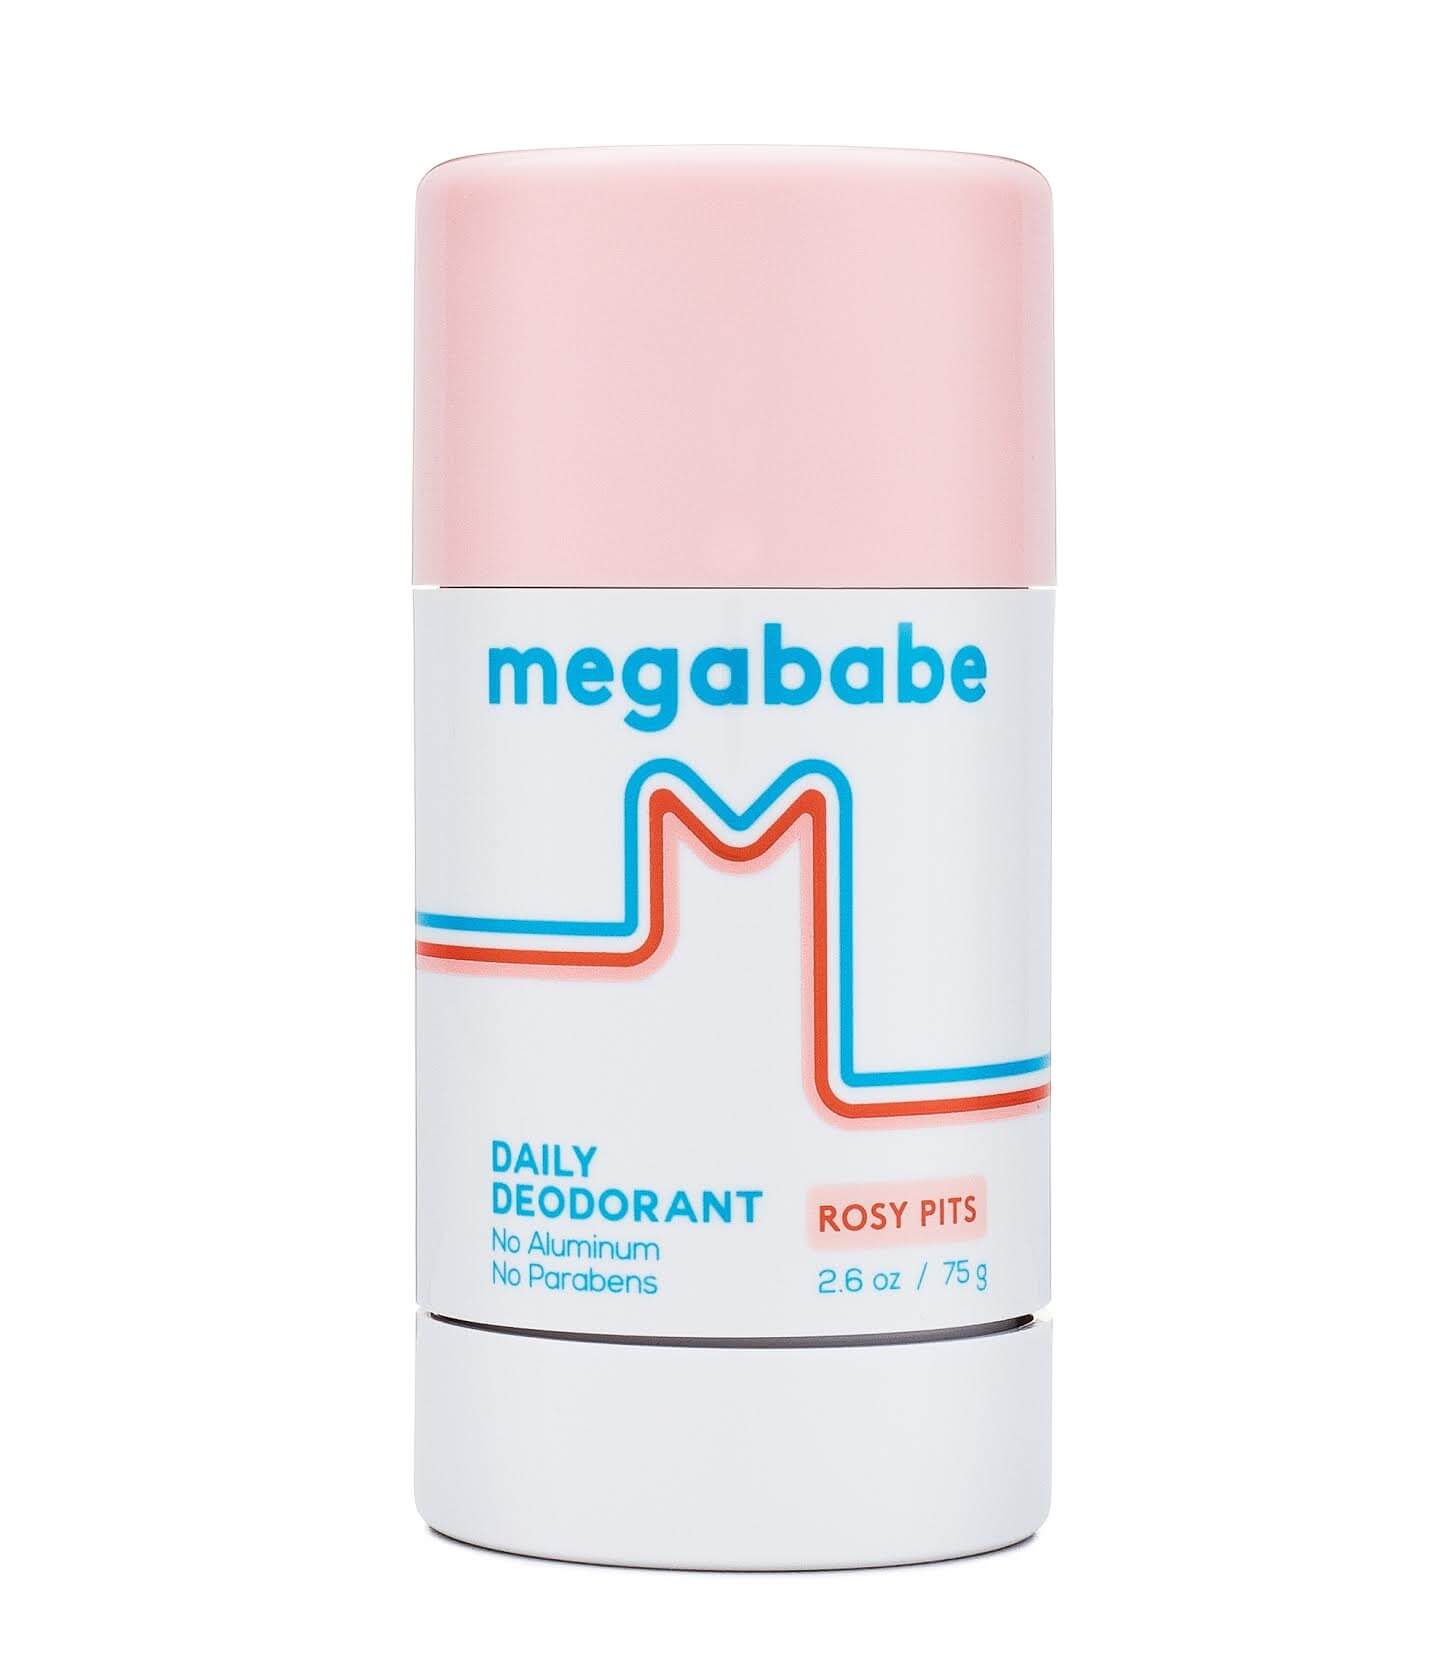 Megababe deodorant 